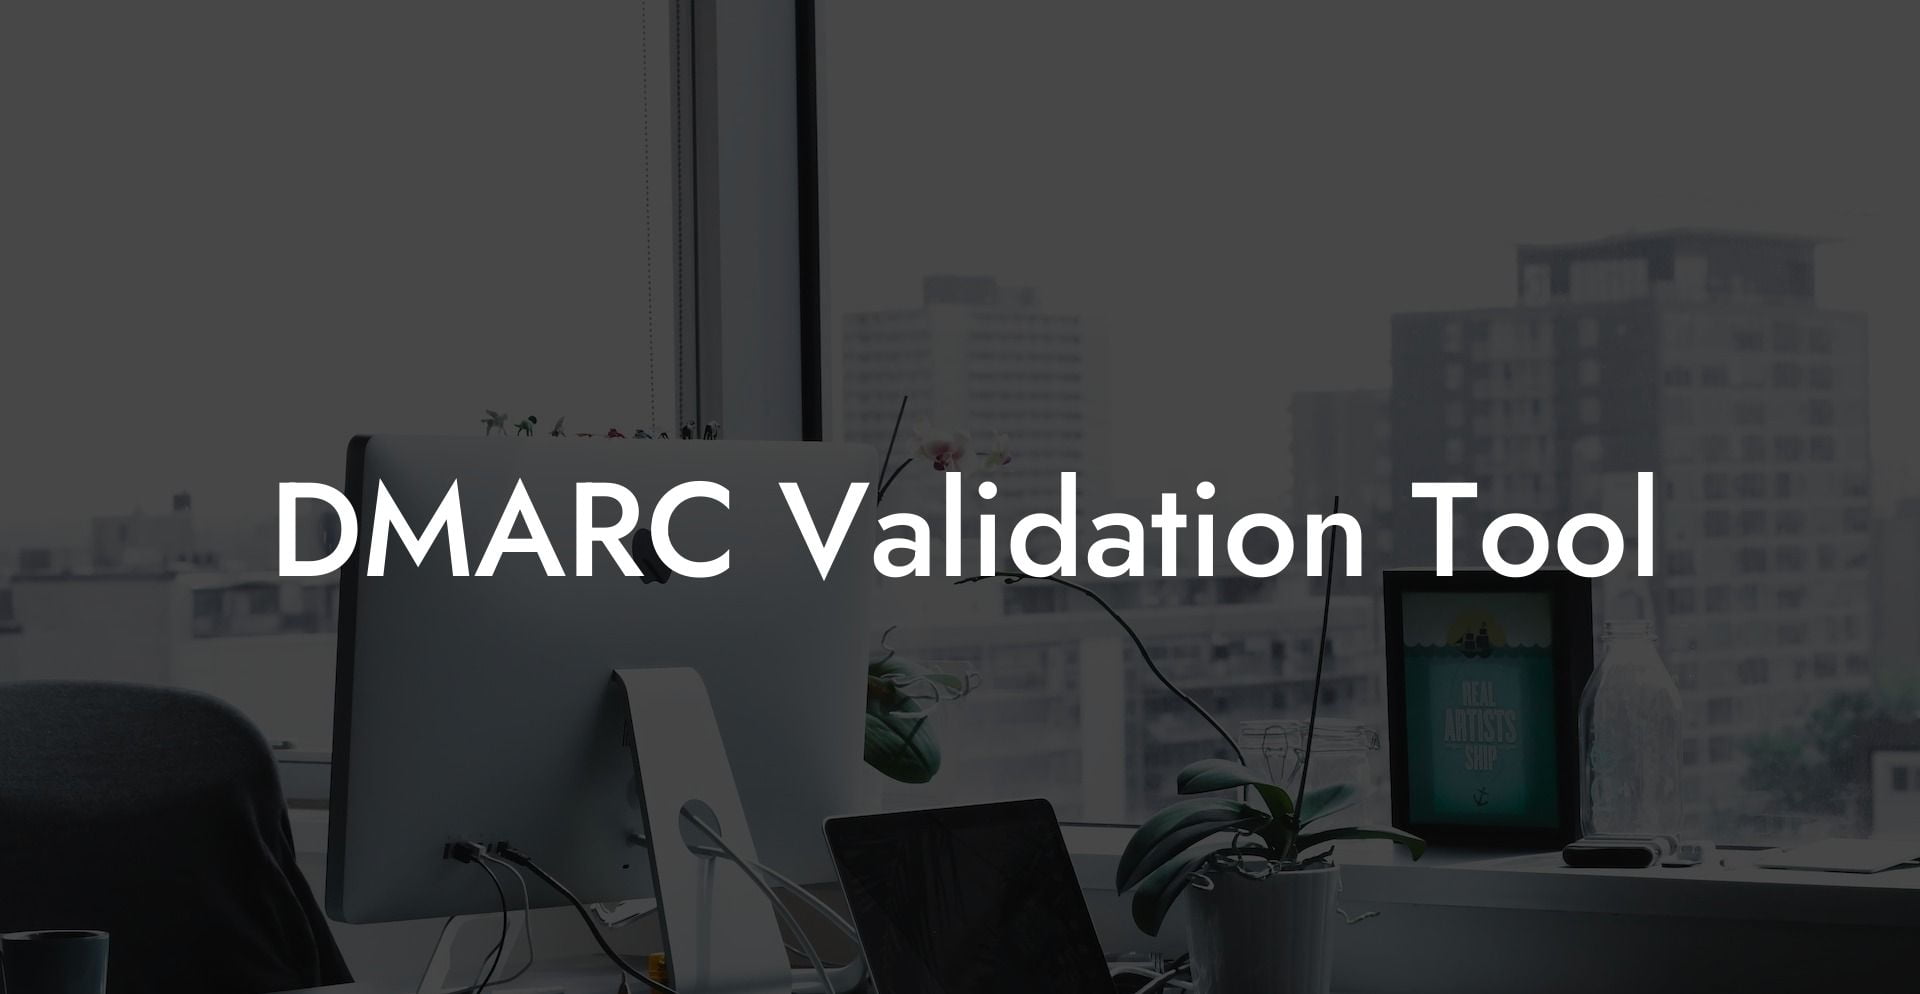 DMARC Validation Tool